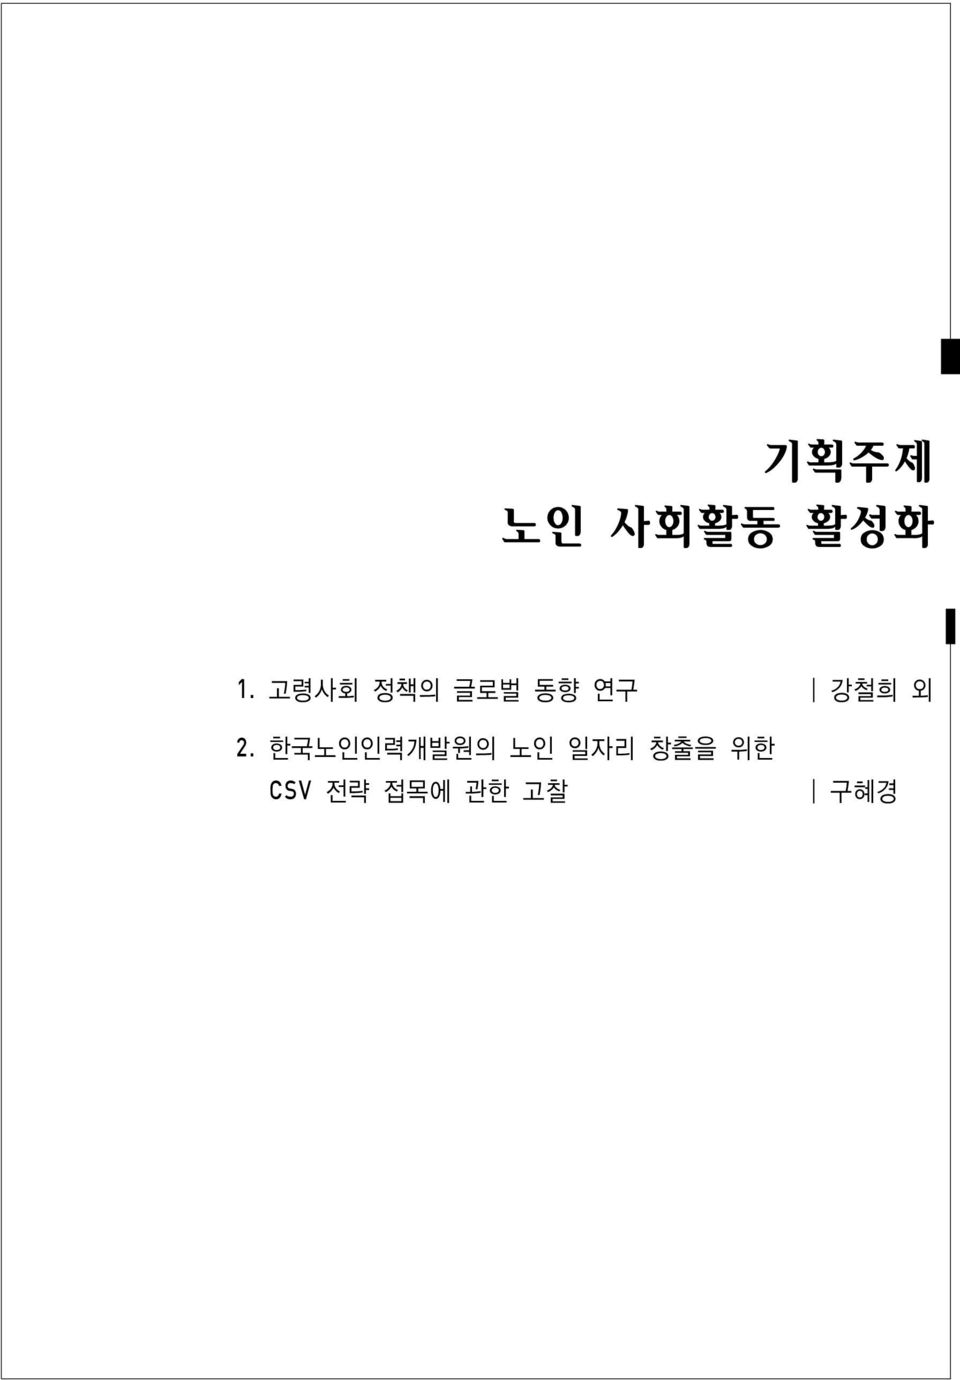 외 2. 한국노인인력개발원의 노인 일자리